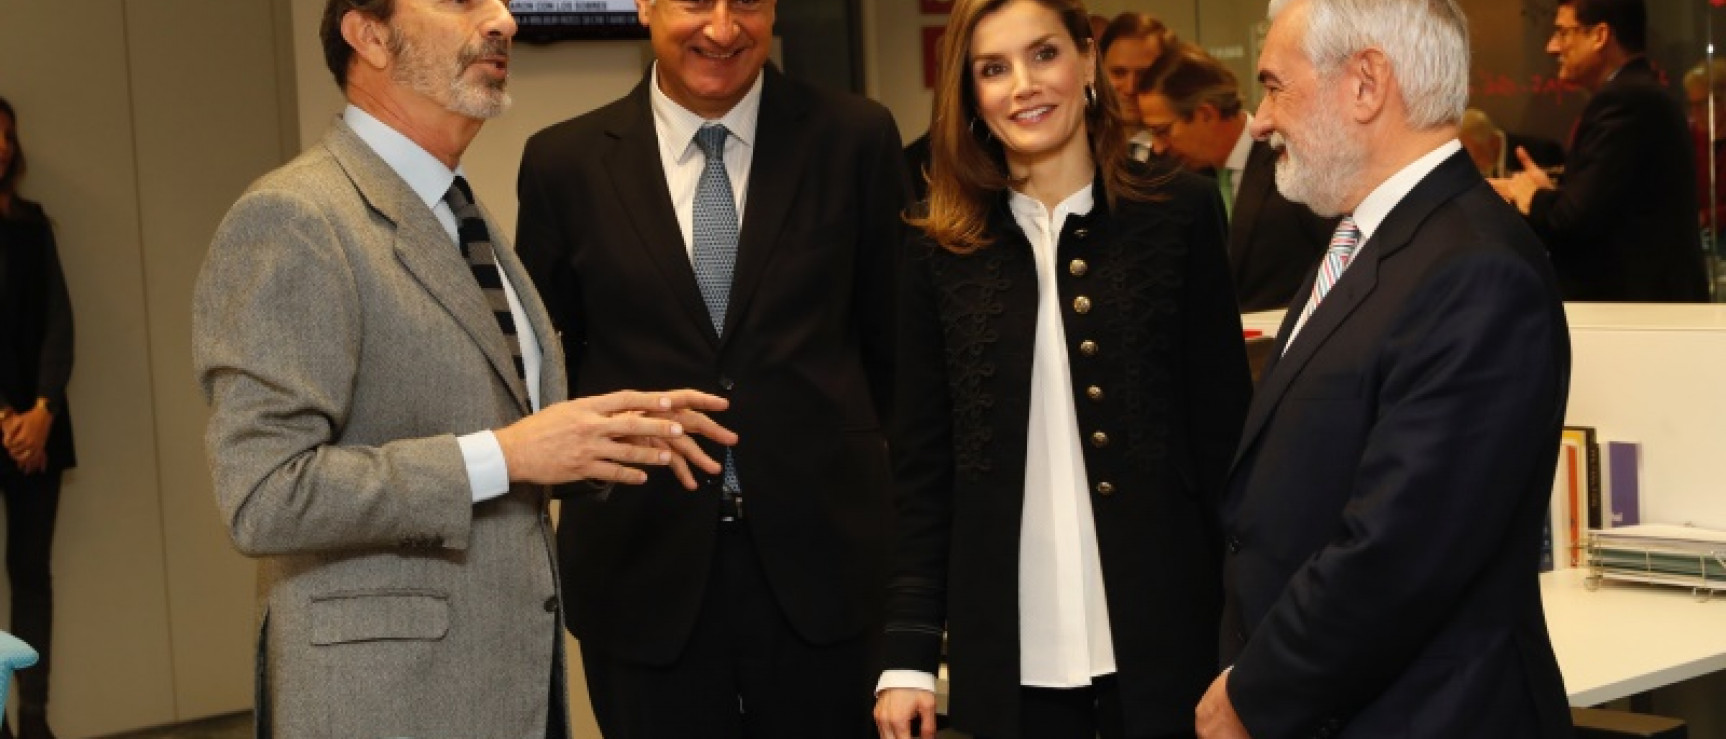 La reina Letizia visita la Fundación del Español Urgente. © Casa de S. M. el Rey.